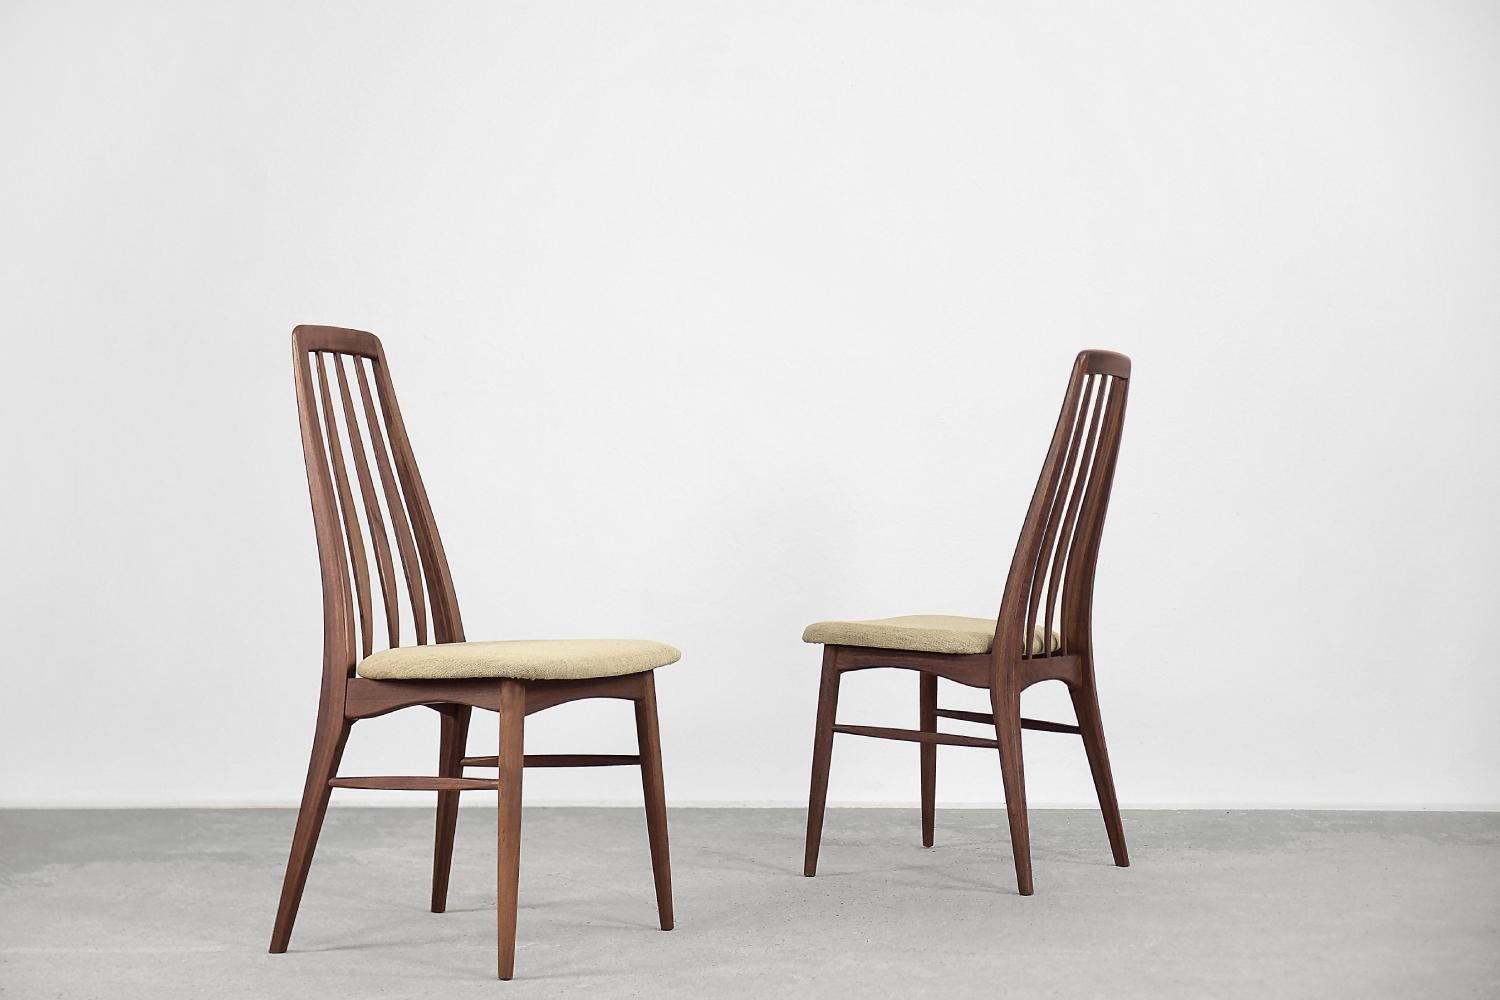 Cet ensemble de deux chaises Eva modernistes a été conçu par Niels Koefoed pour la manufacture danoise Koefoed Hornslet en 1964. Ces chaises sont fabriquées en teck massif et revêtues d'un tissu clair de haute qualité. Cet ensemble a été conçu comme